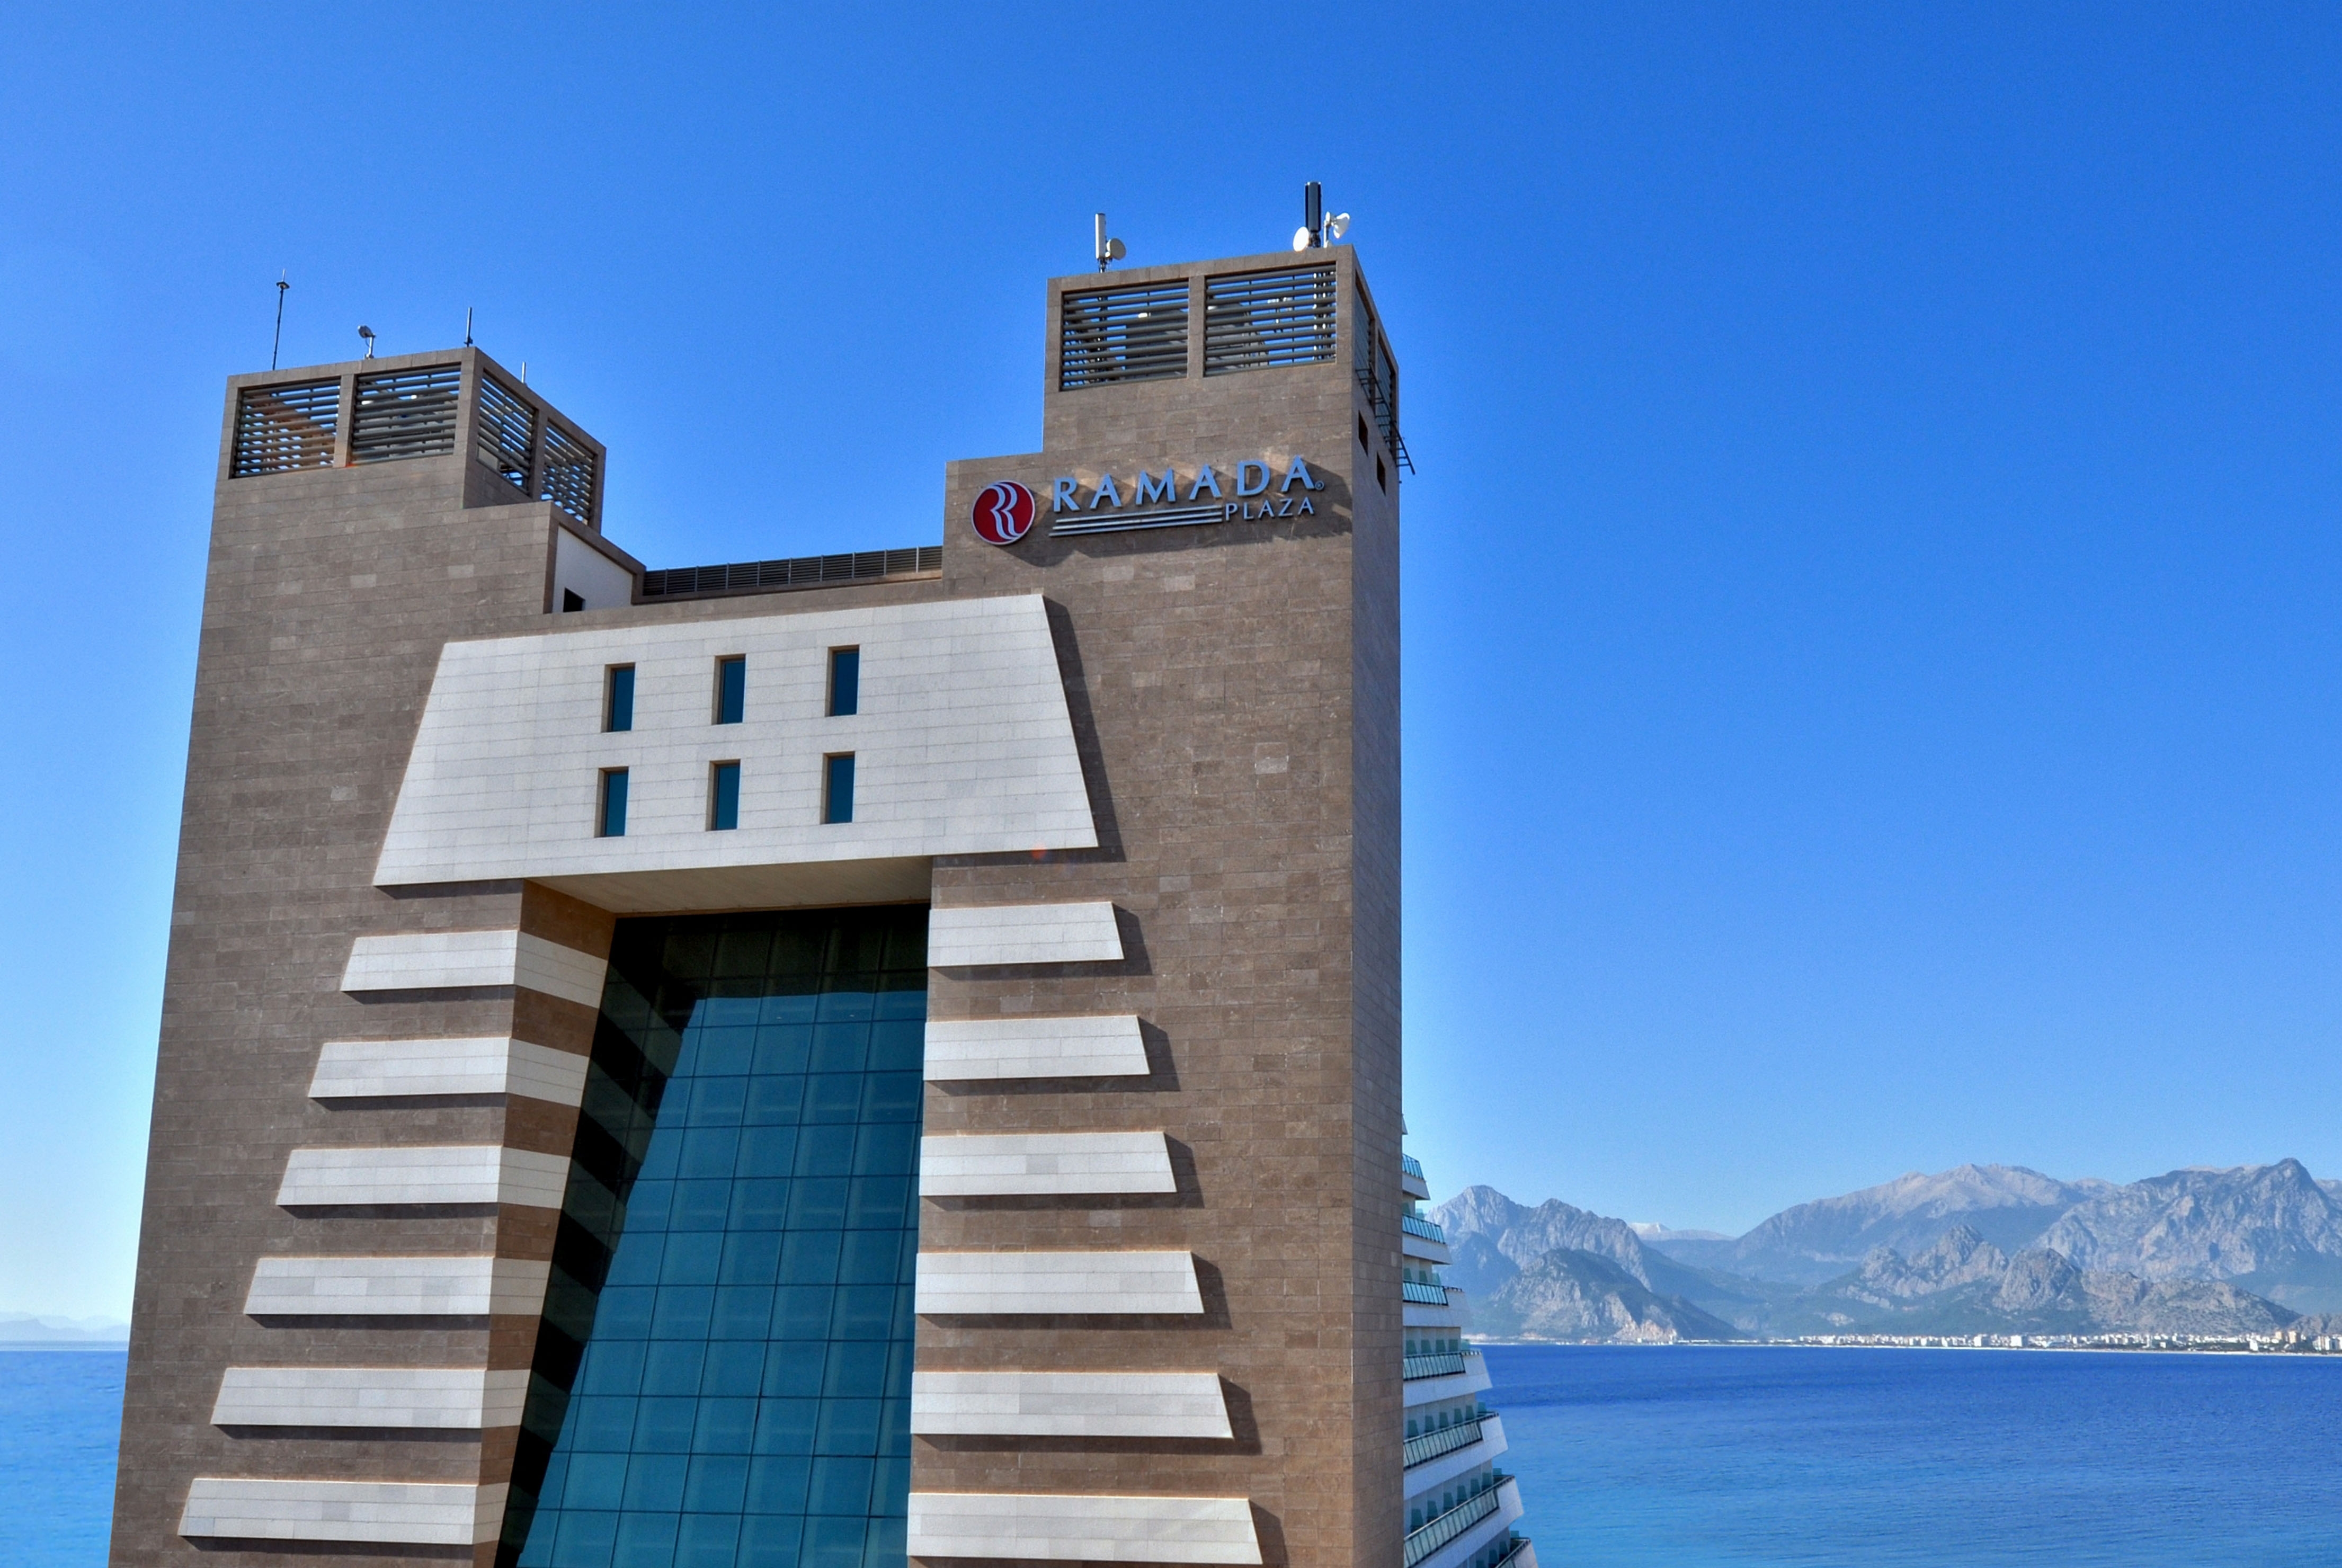 Ramada Plaza By Wyndham Antalya Antalya Tr Hotels